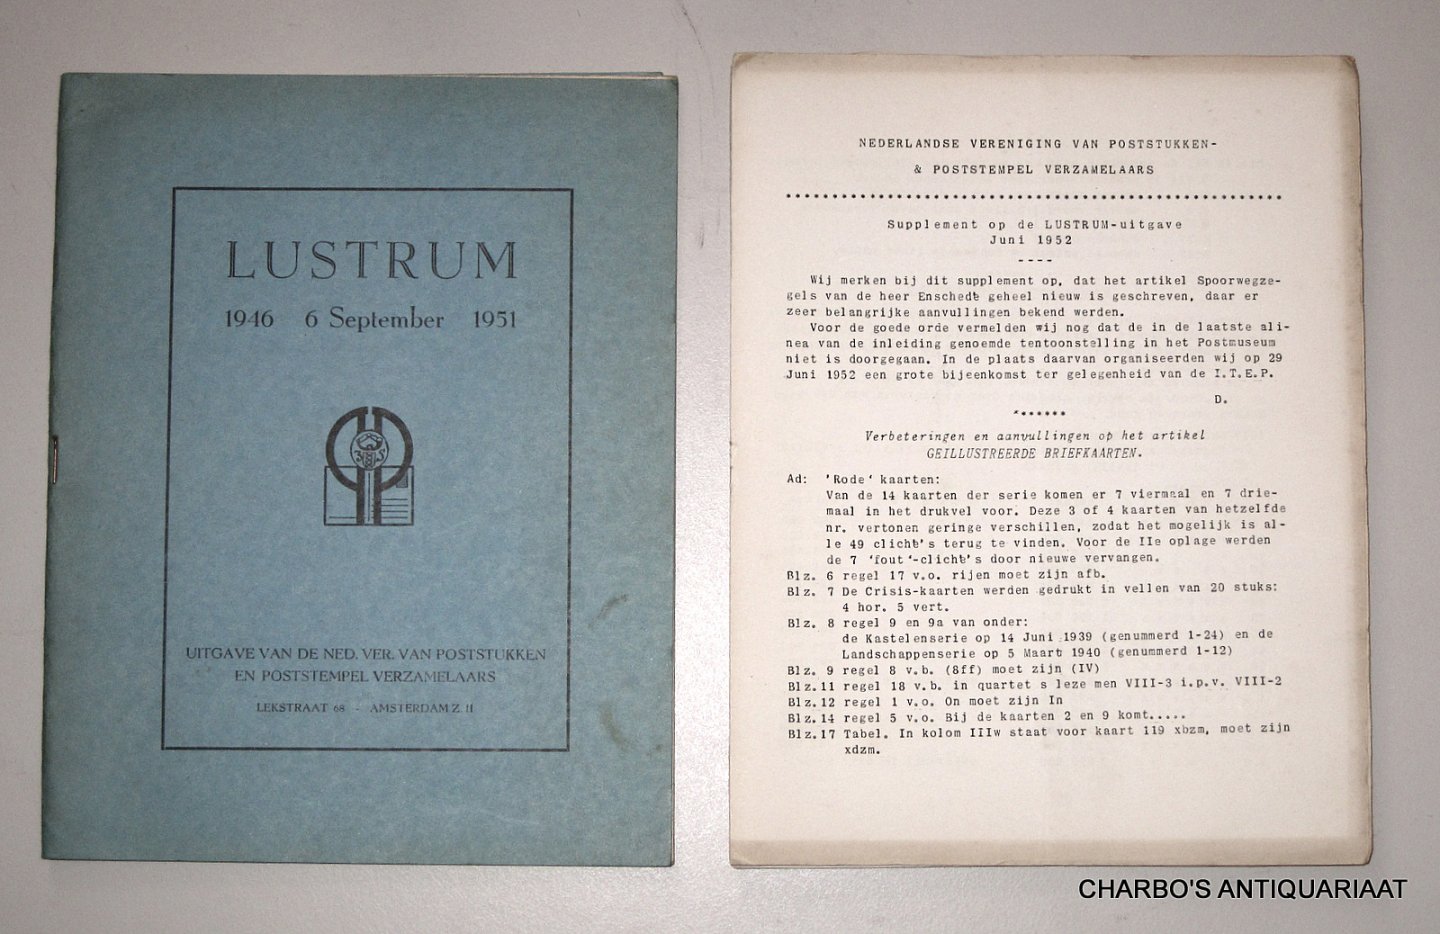 DEKKER, J. & WILLIGEN, A. VAN DER, - Lustrum-nummer 6 September 1946 - 1951. Uitgave van de Ned. Ver. van Poststukken en Poststempel Verzamelaars.